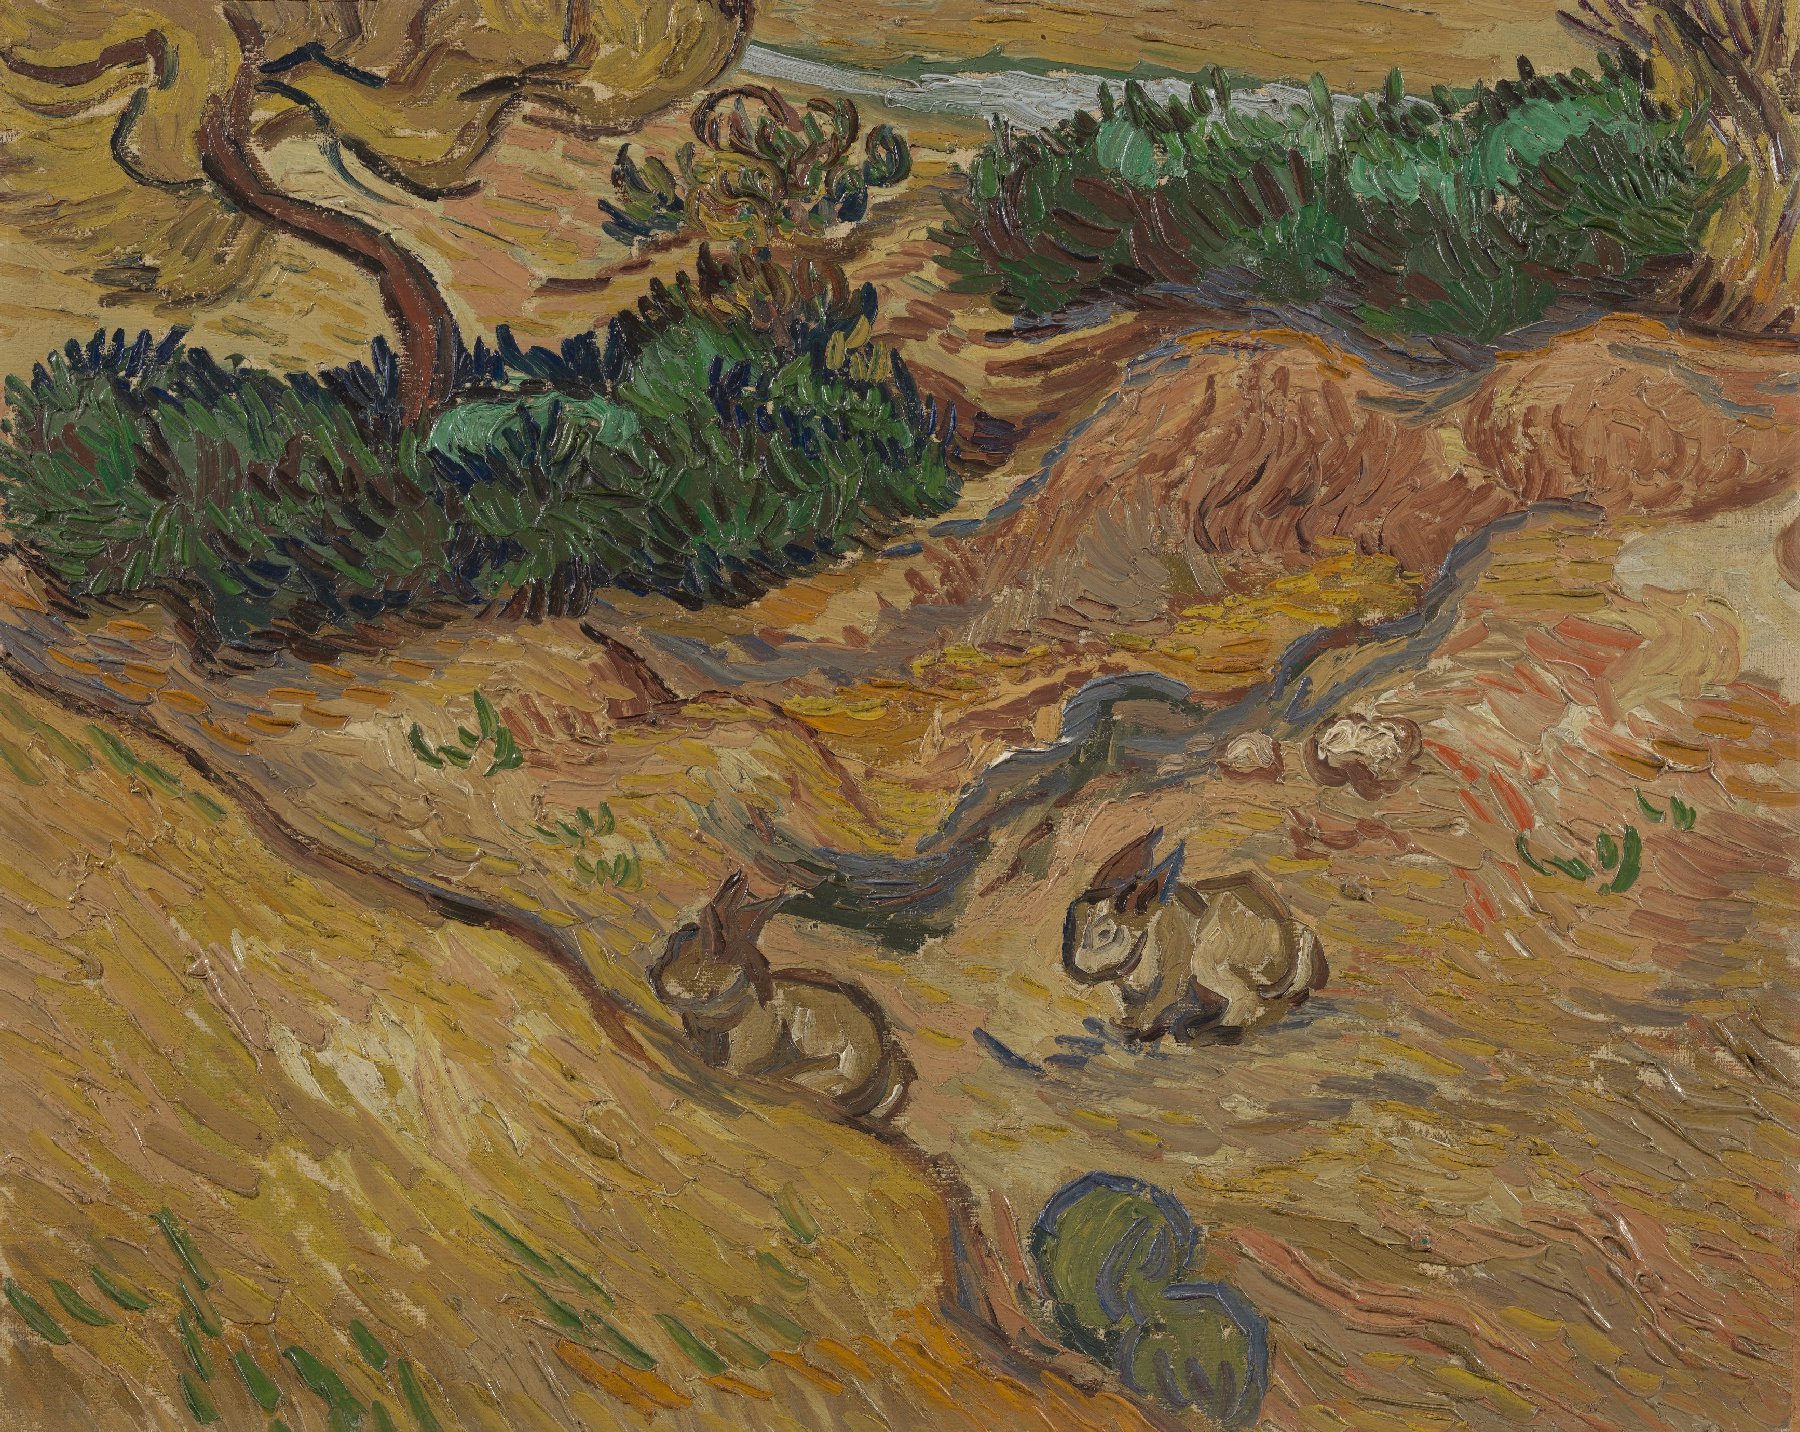 Landschap met konijnen Vincent van Gogh (1853 - 1890), Saint-Rémy-de-Provence, december 1889